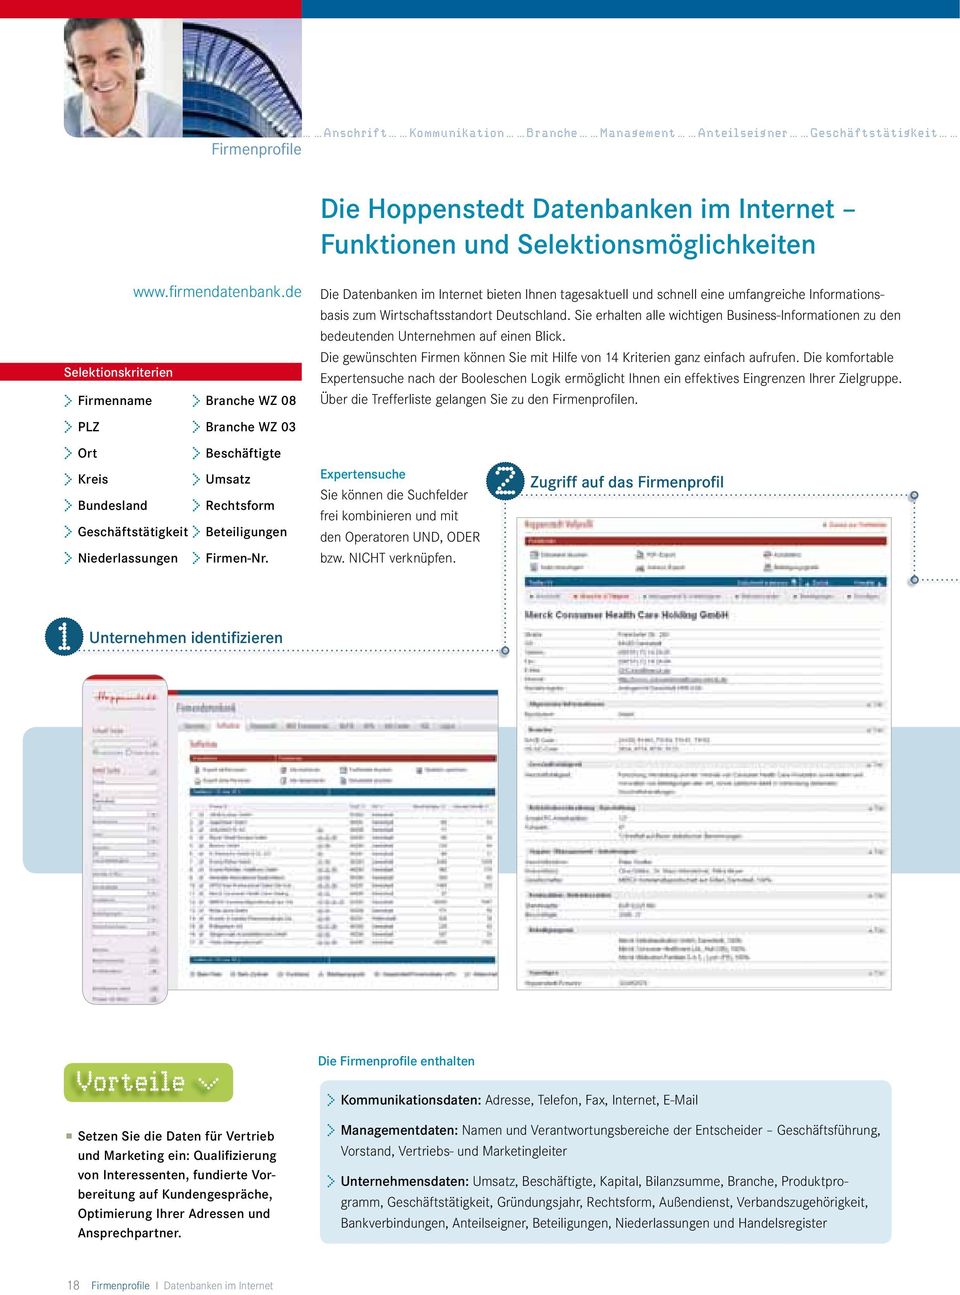 Firmen-Nr. Die Datenbanken im Internet bieten Ihnen tagesaktuell und schnell eine umfangreiche Informationsbasis zum Wirtschaftsstandort Deutschland.